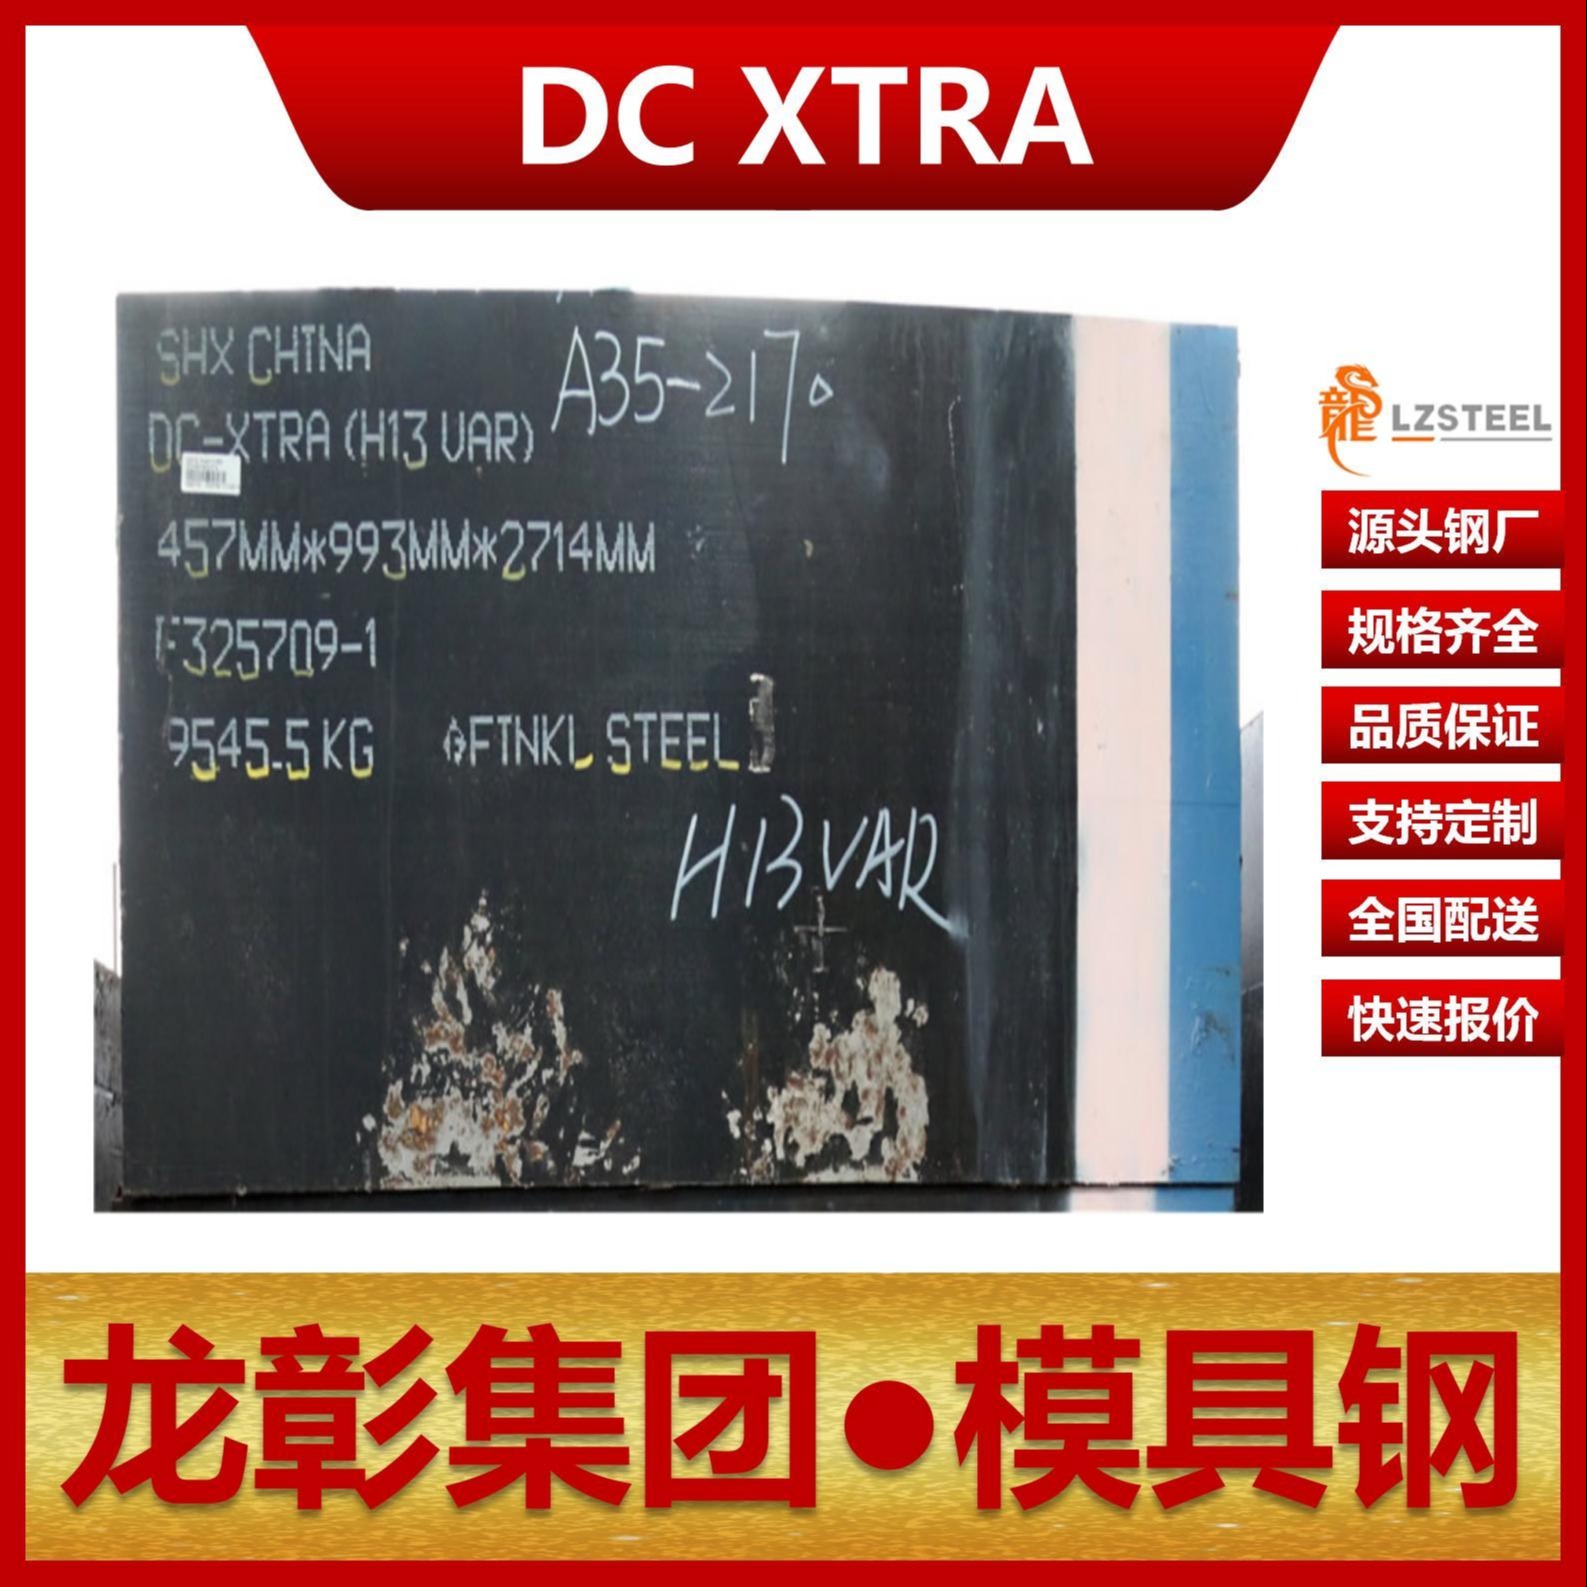 芬可乐DC XTRA模具钢现货批零 进口DC XTRA扁钢圆棒热作模具钢龙彰集团图片